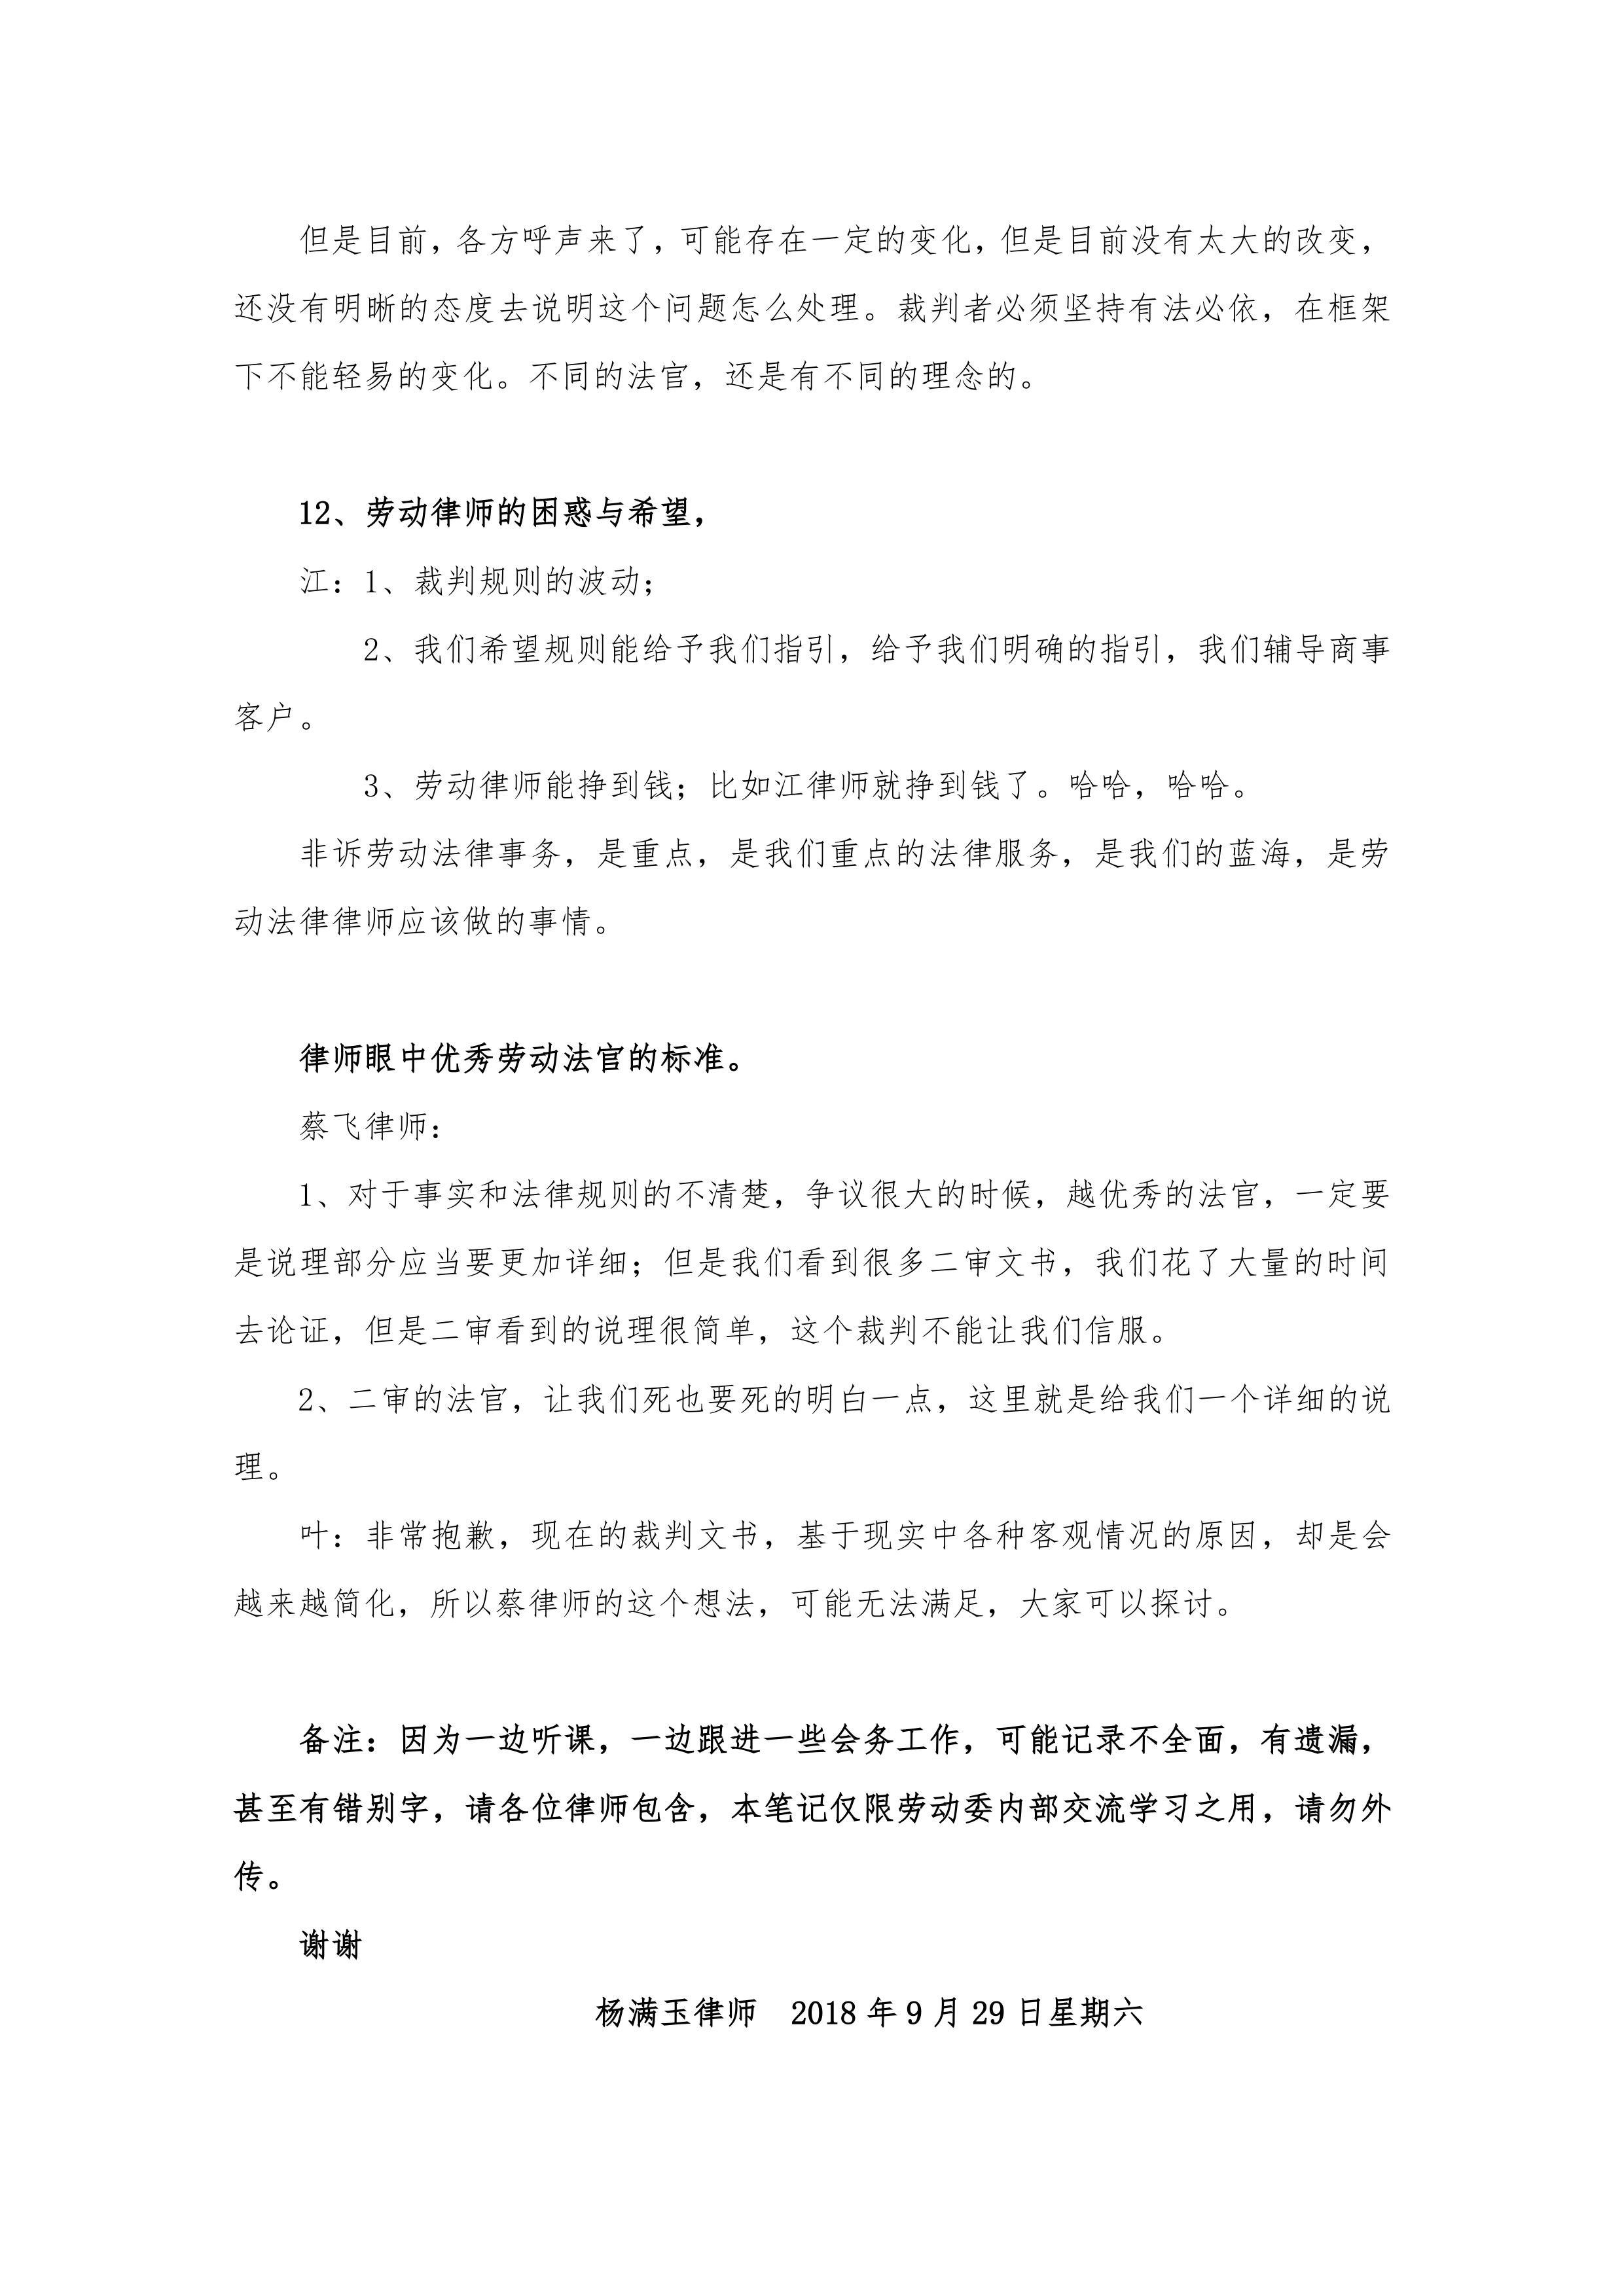 广州地区劳动争议疑难问题解析-叶文建法官授课笔记（2018.9.29）